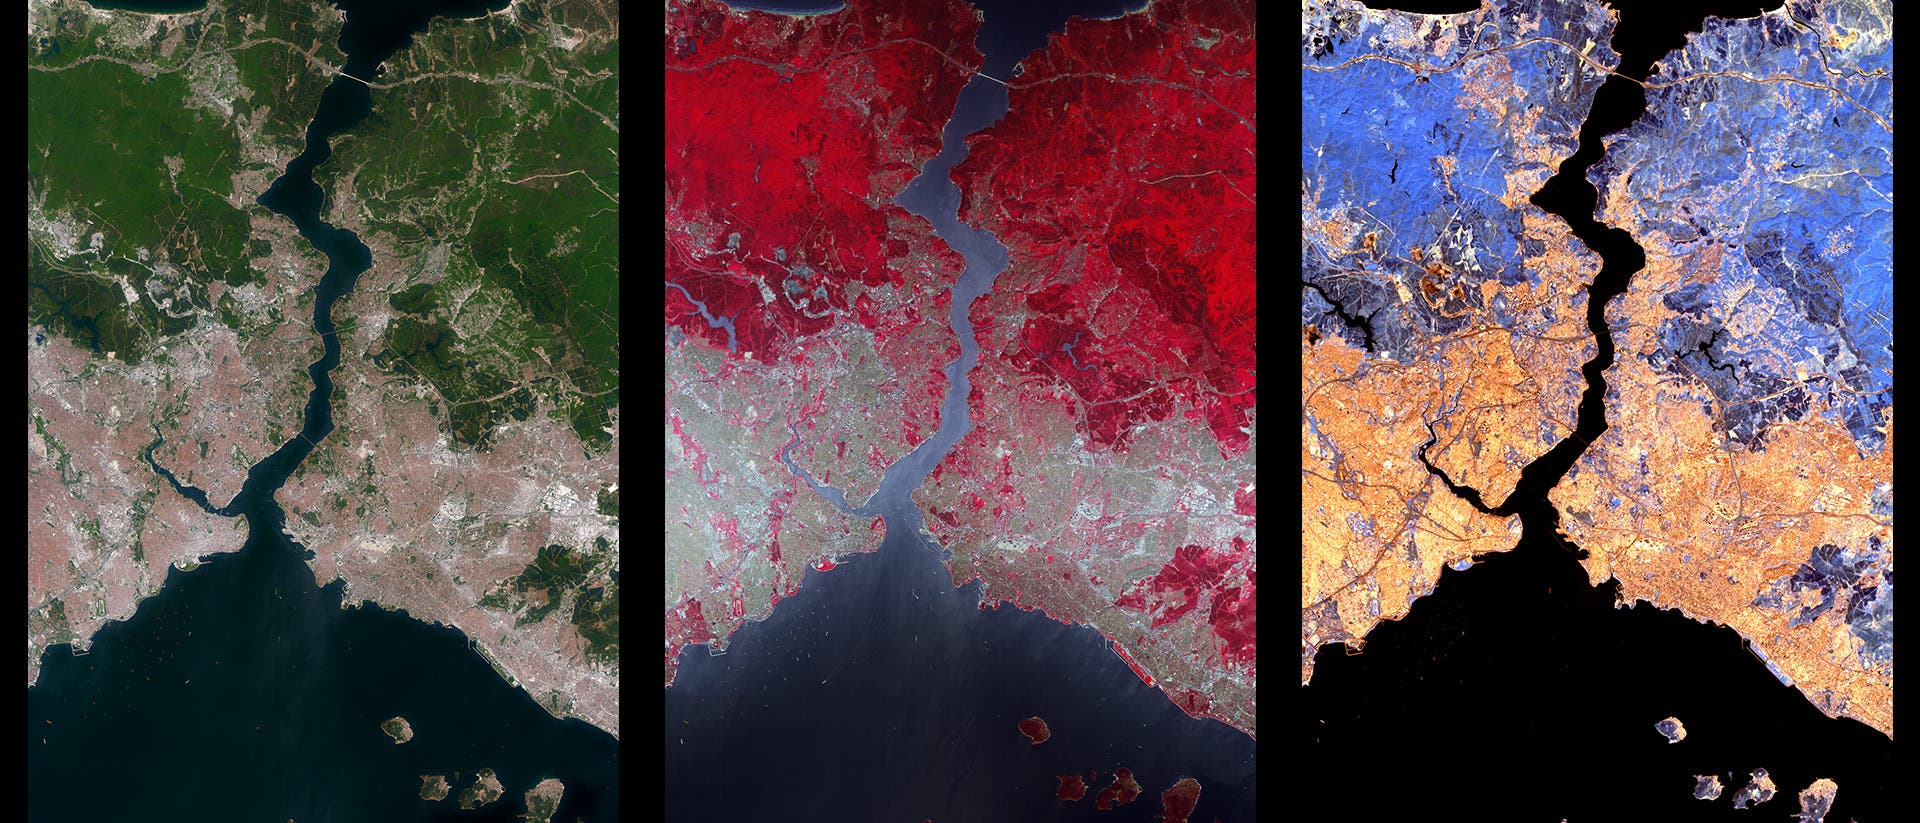 Umweltsatellit macht verborgene Farben sichtbar